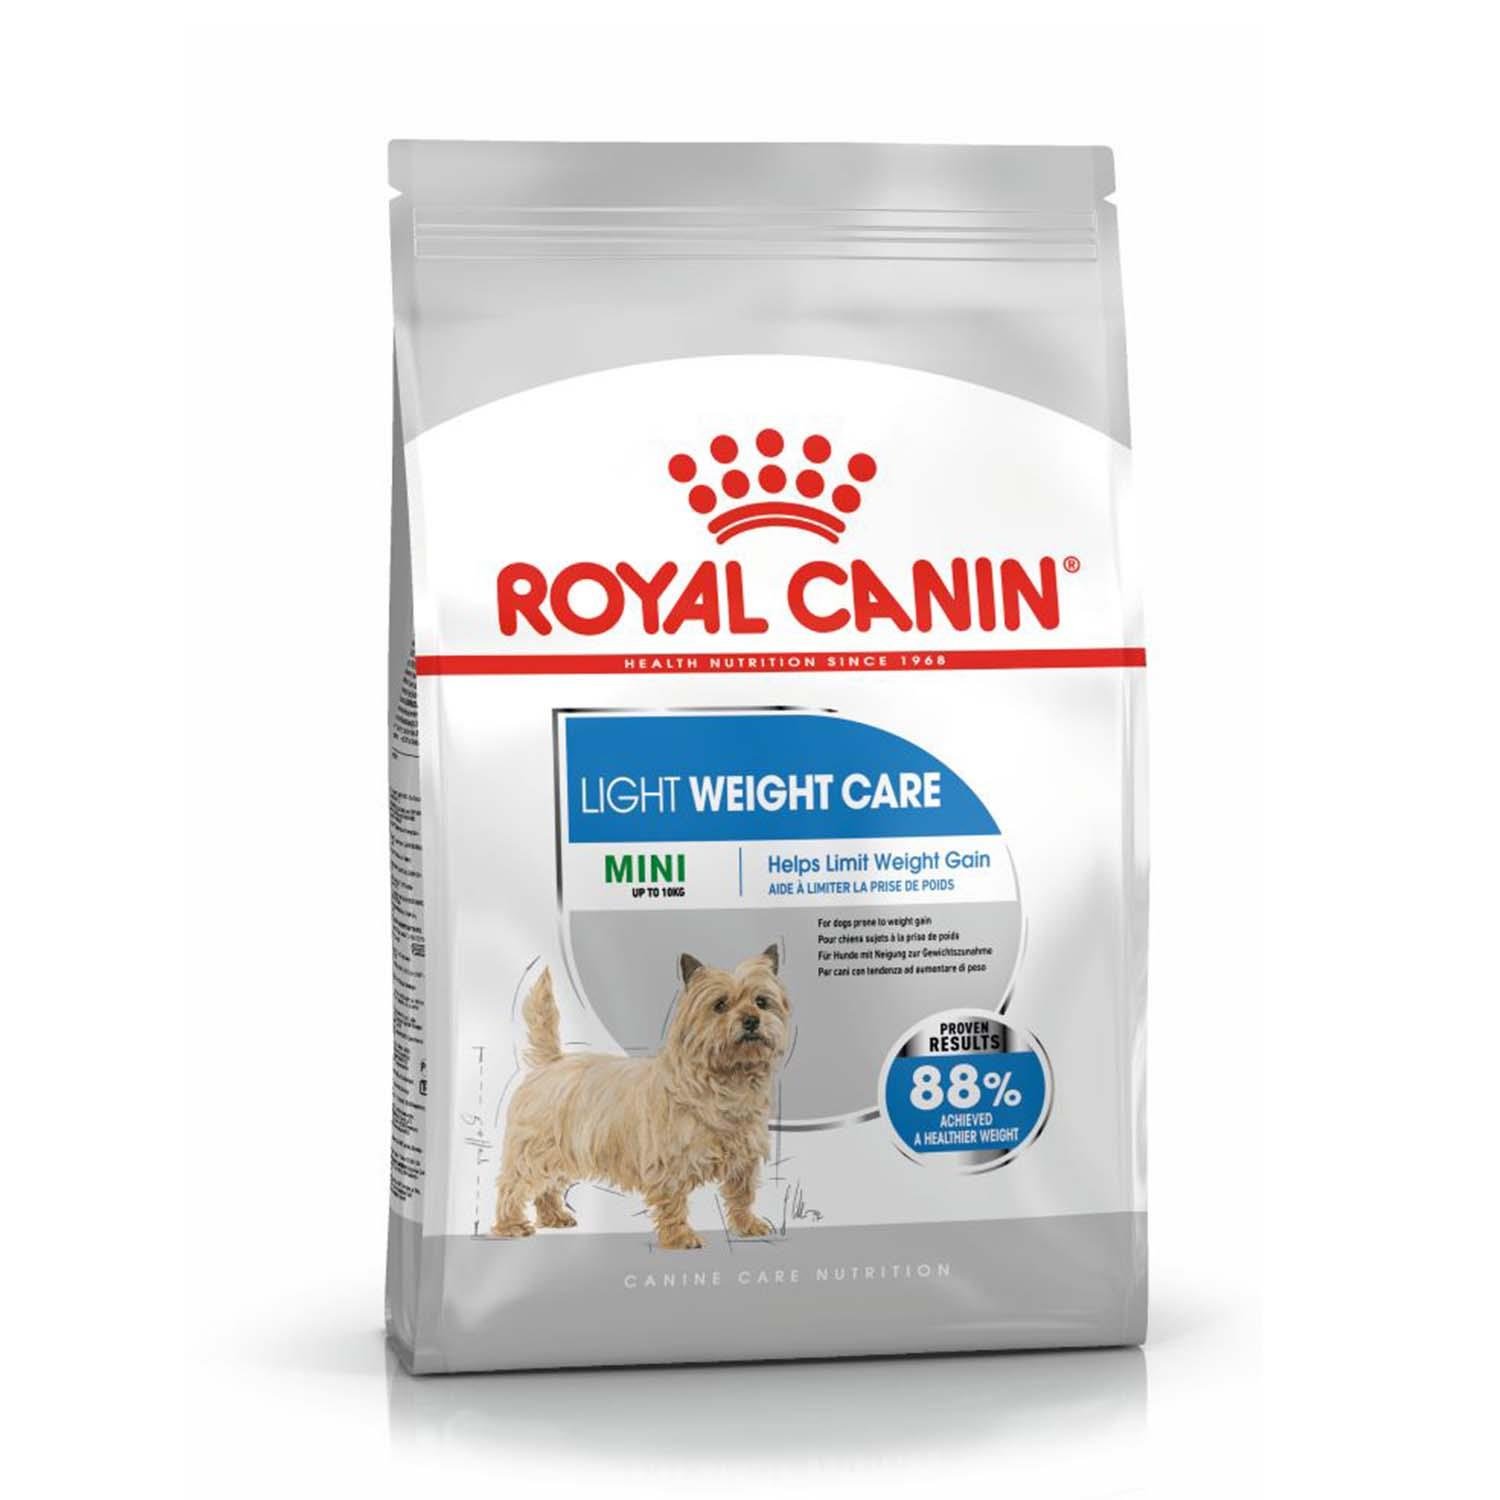 Royal Canin Mini Light Küçük Irk Köpekler Için Diyet Mama 3 Kg